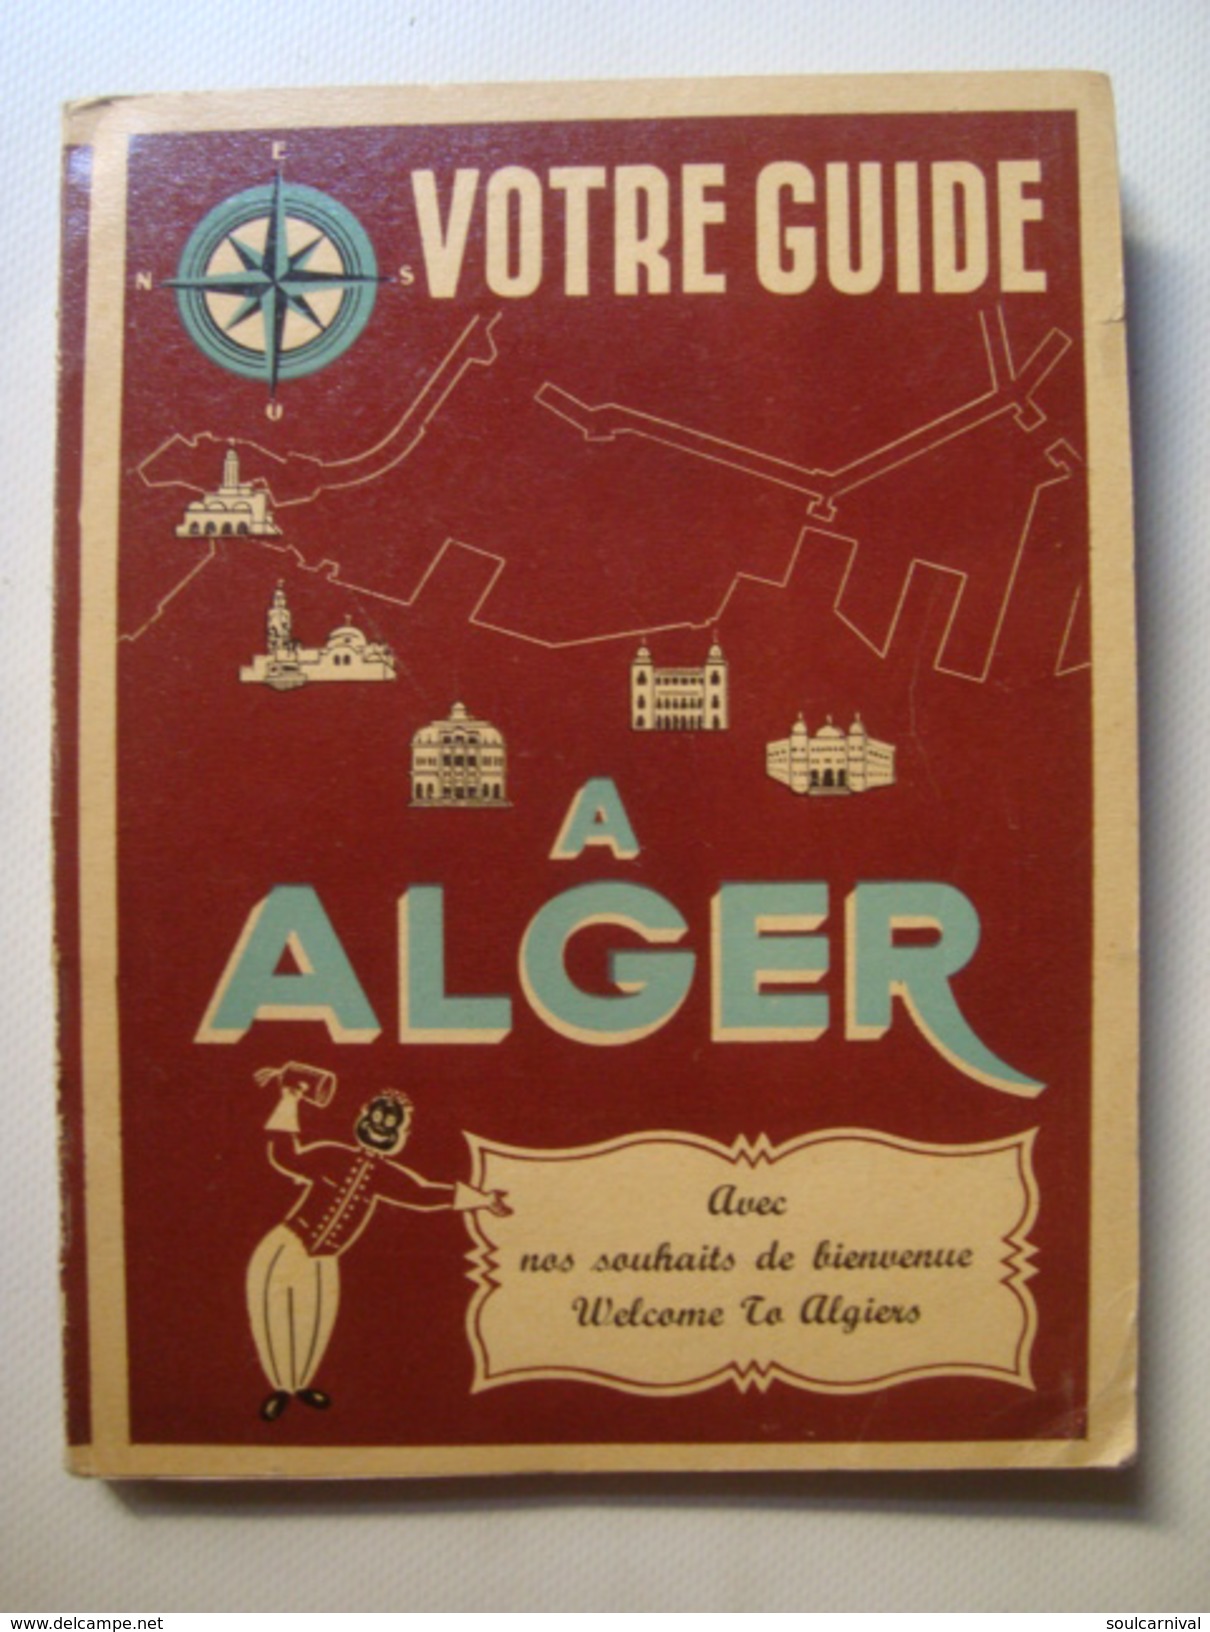 VOTRE GUIDE À ALGER, AVEC NOS SOUHAITS DE BIENVENUE / WELCOME TO ALGIERS - ALGERIA, PUBLIMONDE 1950 APROX. VIN ALGÉRIANA - Africa